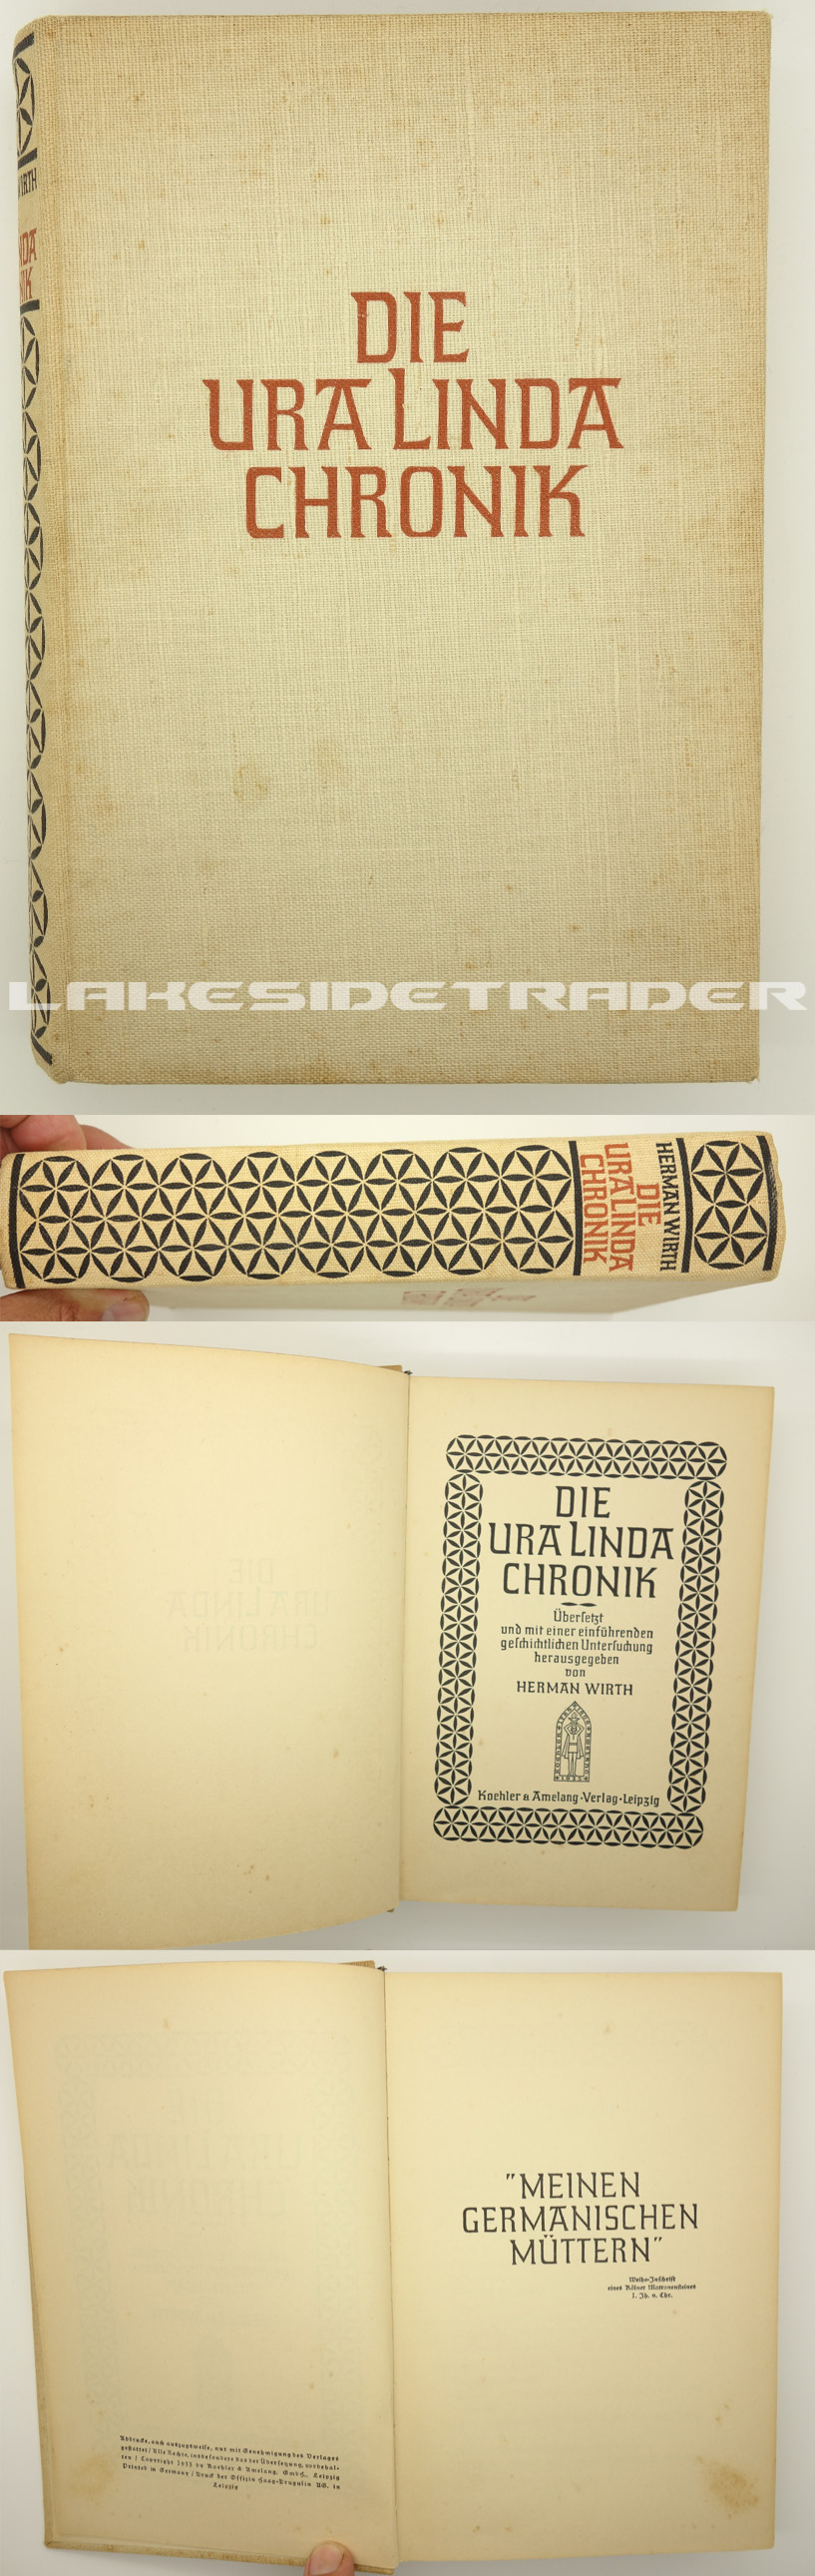 Die Ura Linda Chronik - 1933